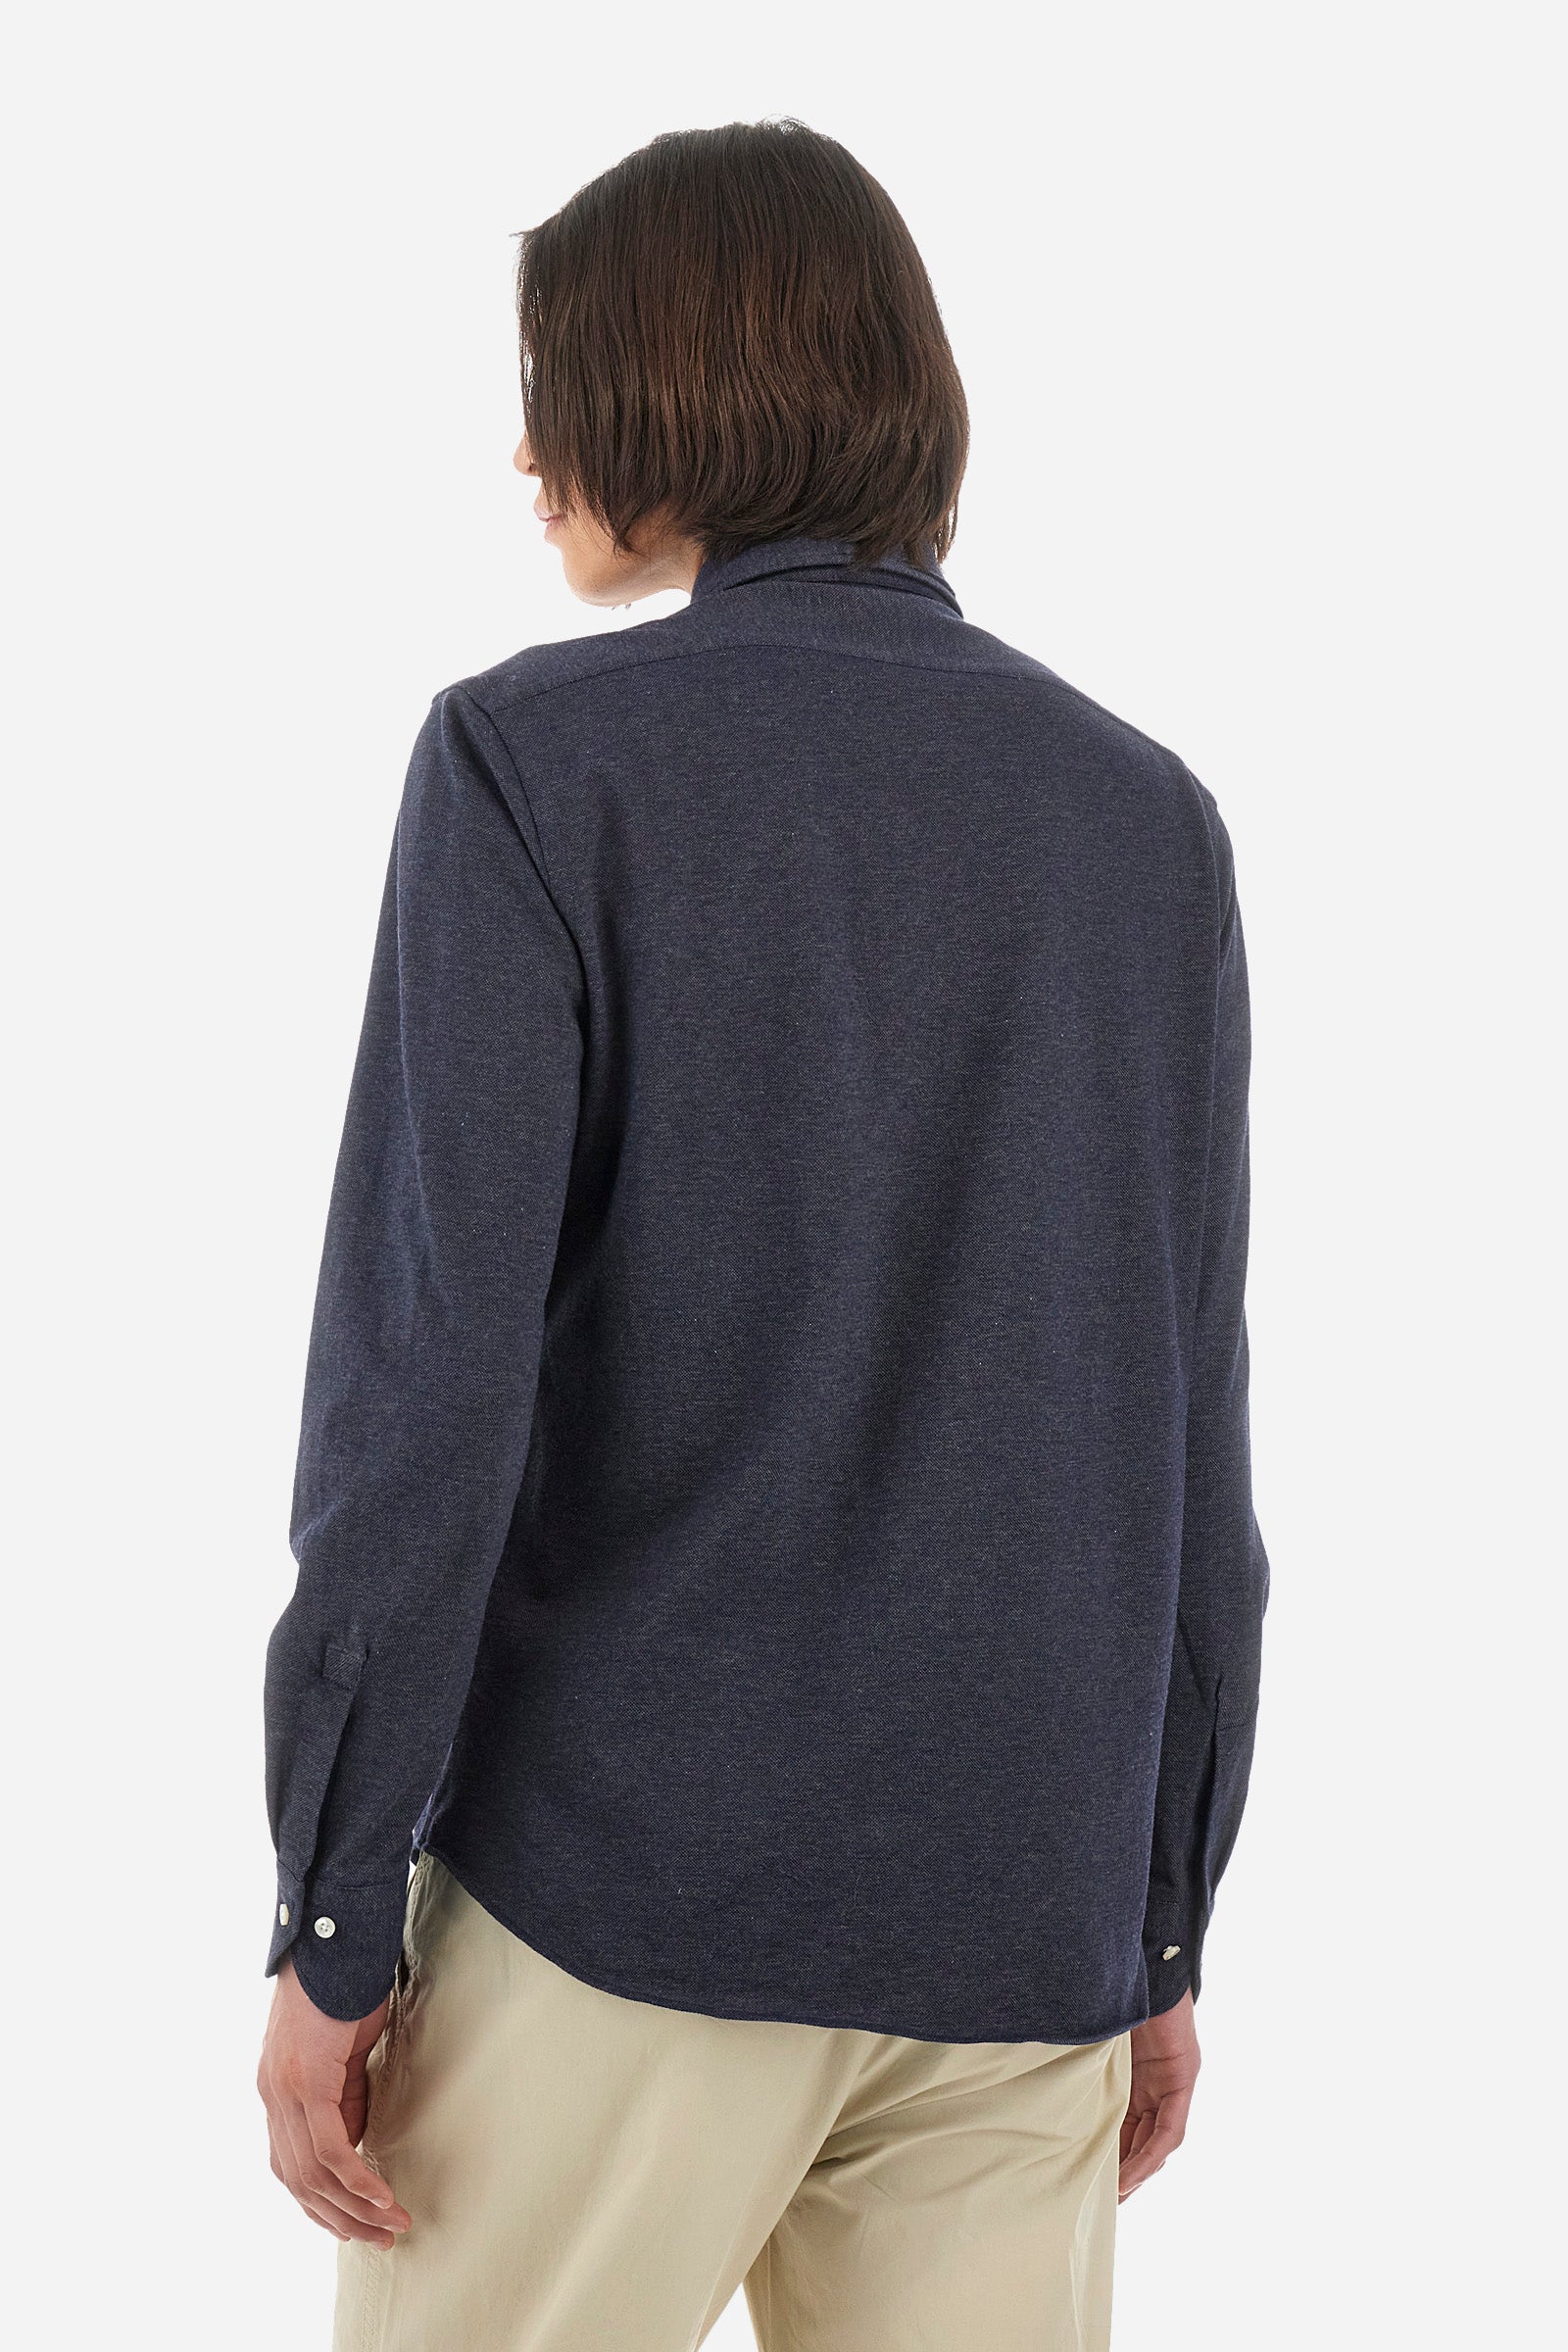 Camisa hombre custom fit manga larga piqué algodón - Qalam